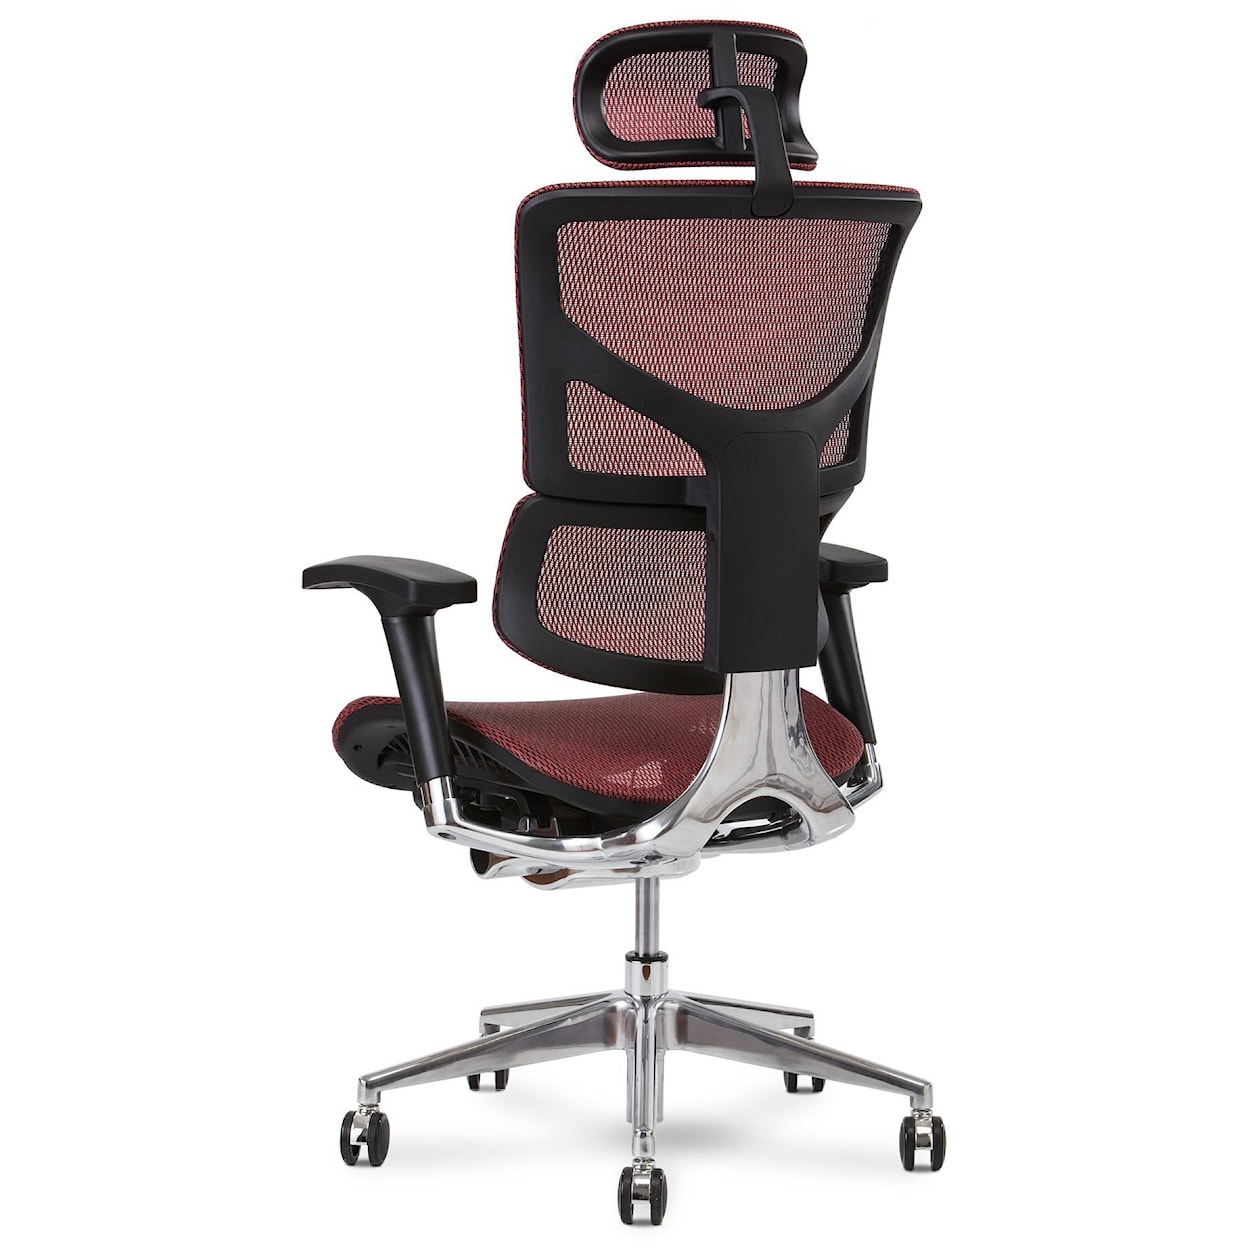 X-Chair X2 Executive Chair